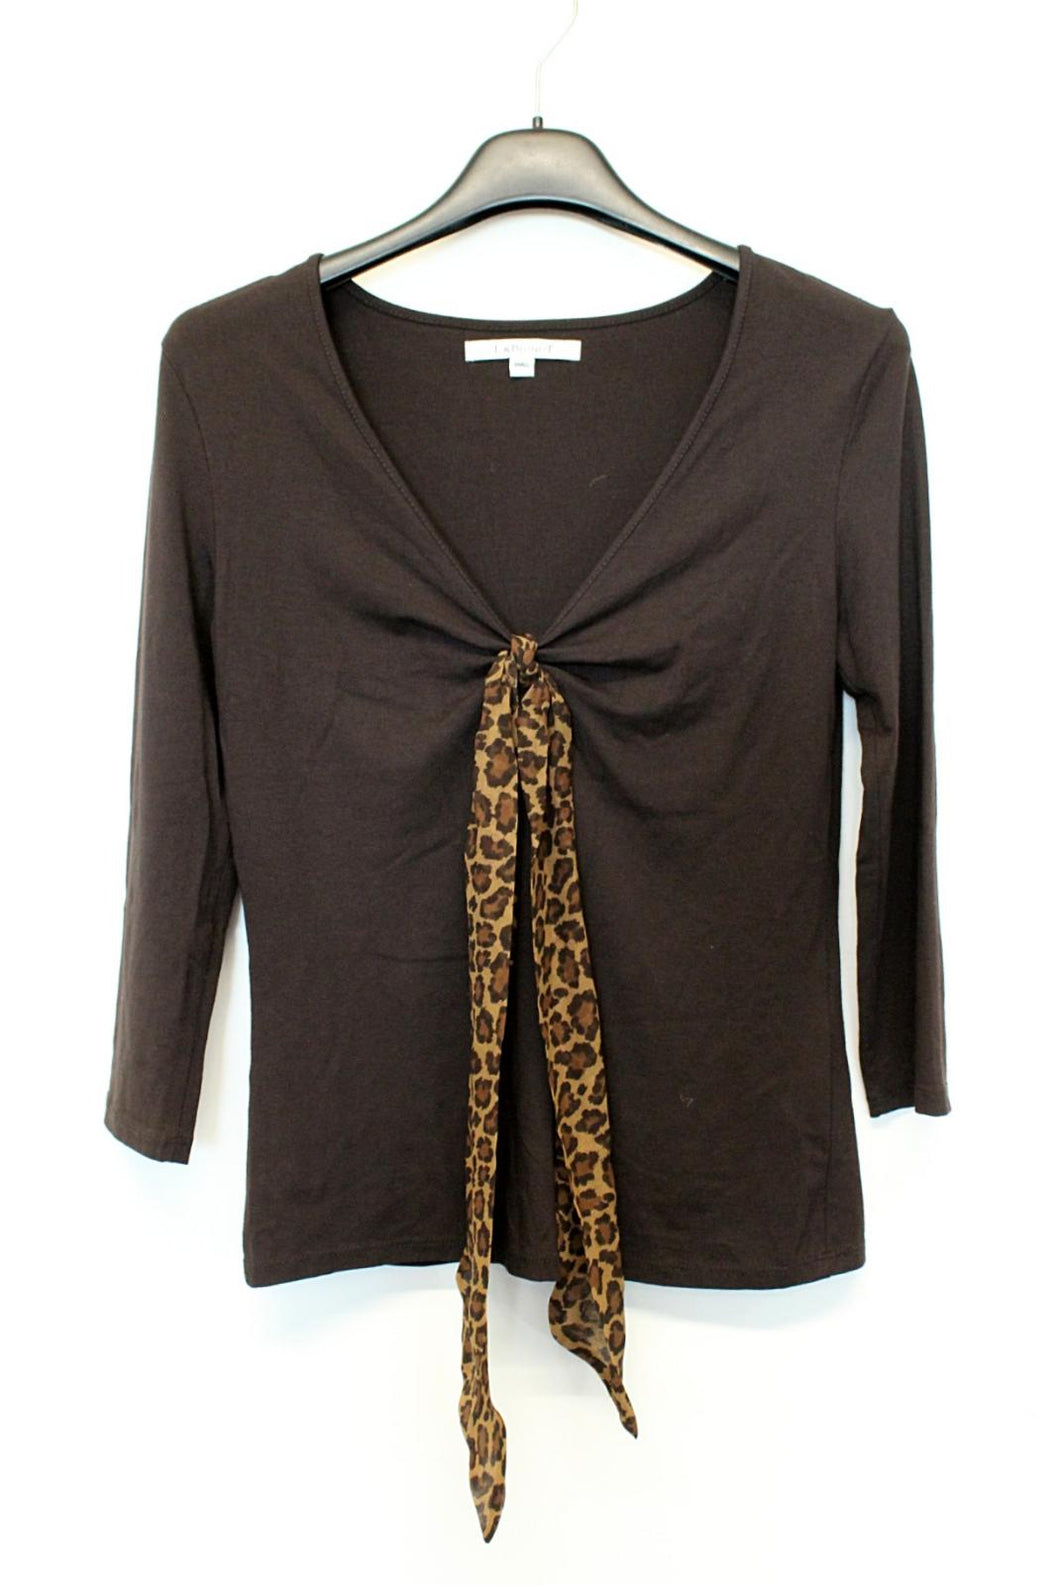 L.K BENNETT Ladies Dark Brown V-Neck Front Leopard Print Tie Stretch Top S